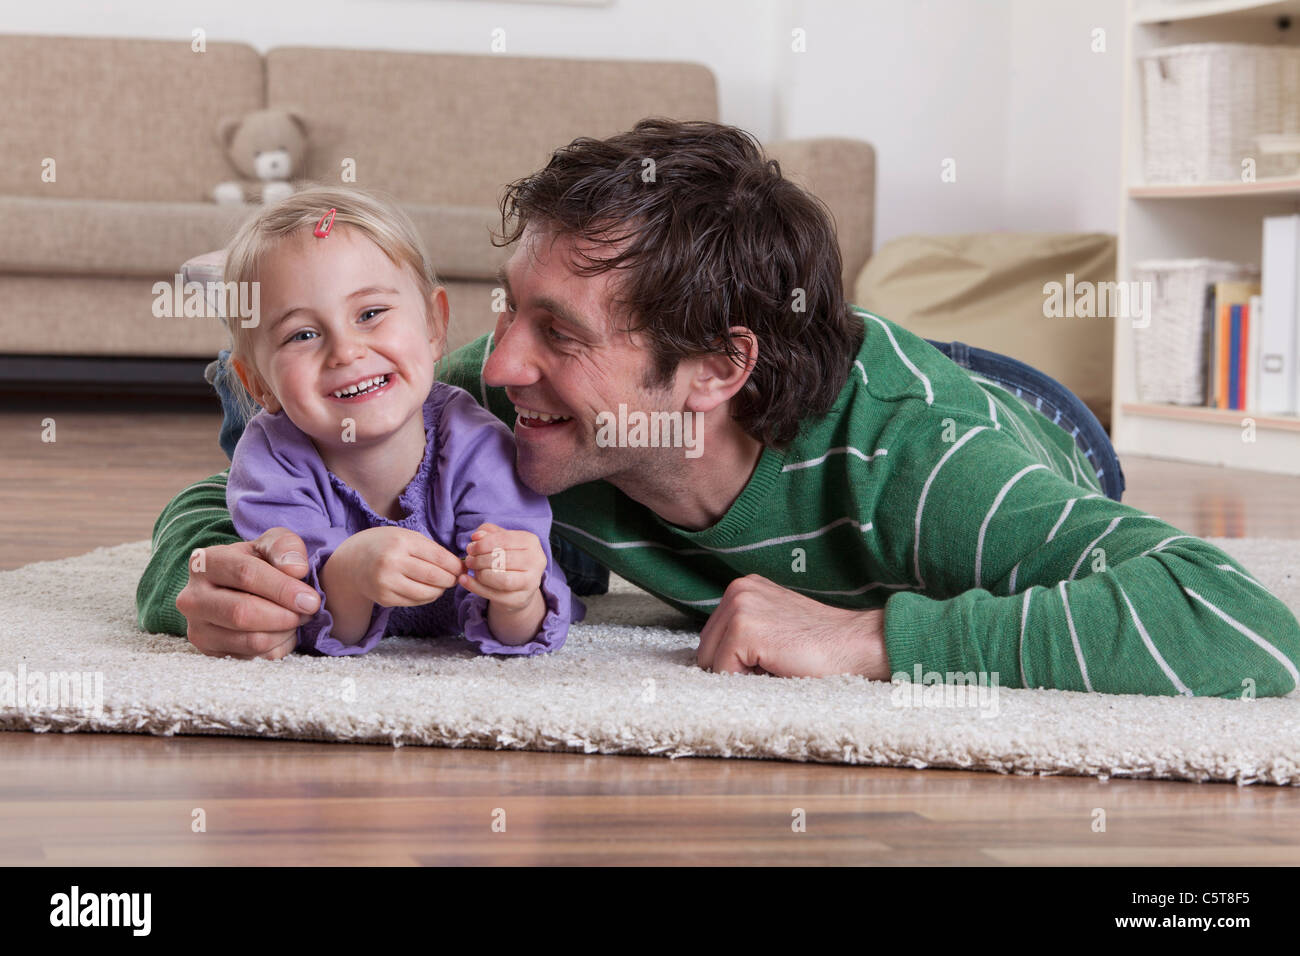 Germany, Bavaria, Munich, père et fille, allongé sur le tapis, smiling Banque D'Images